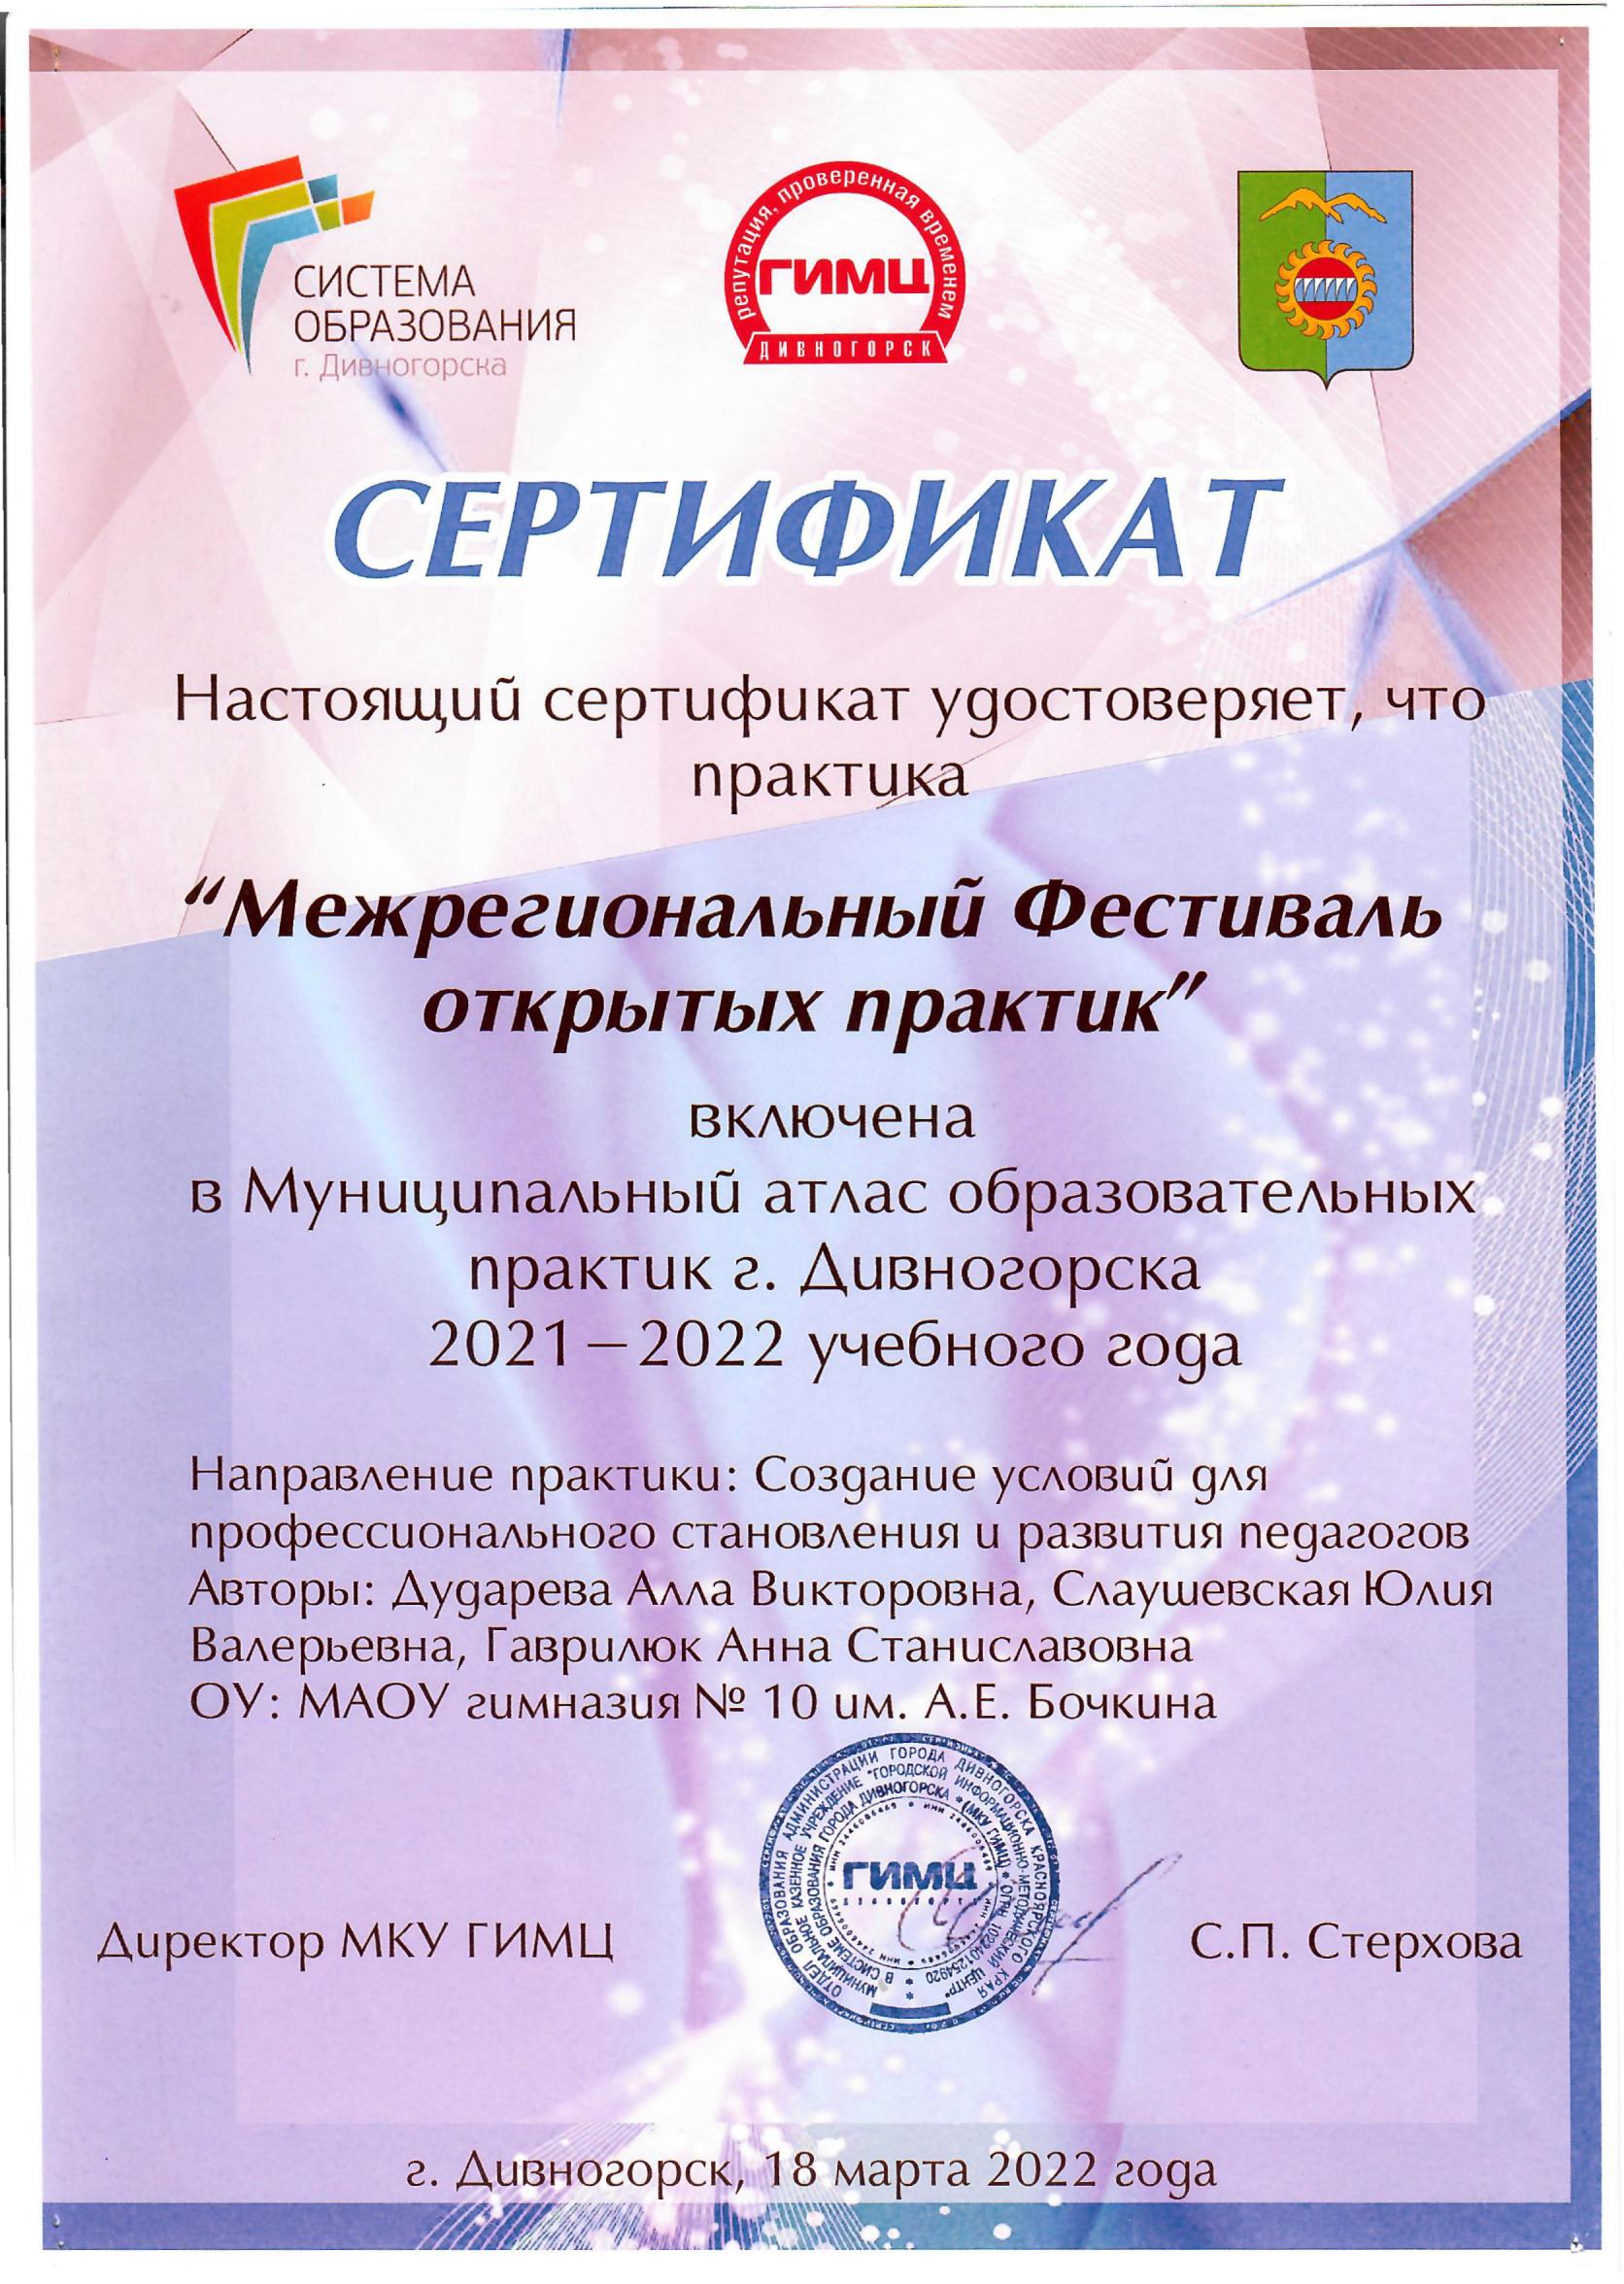 Сертификат о включении в МАОП г. Дивногорска